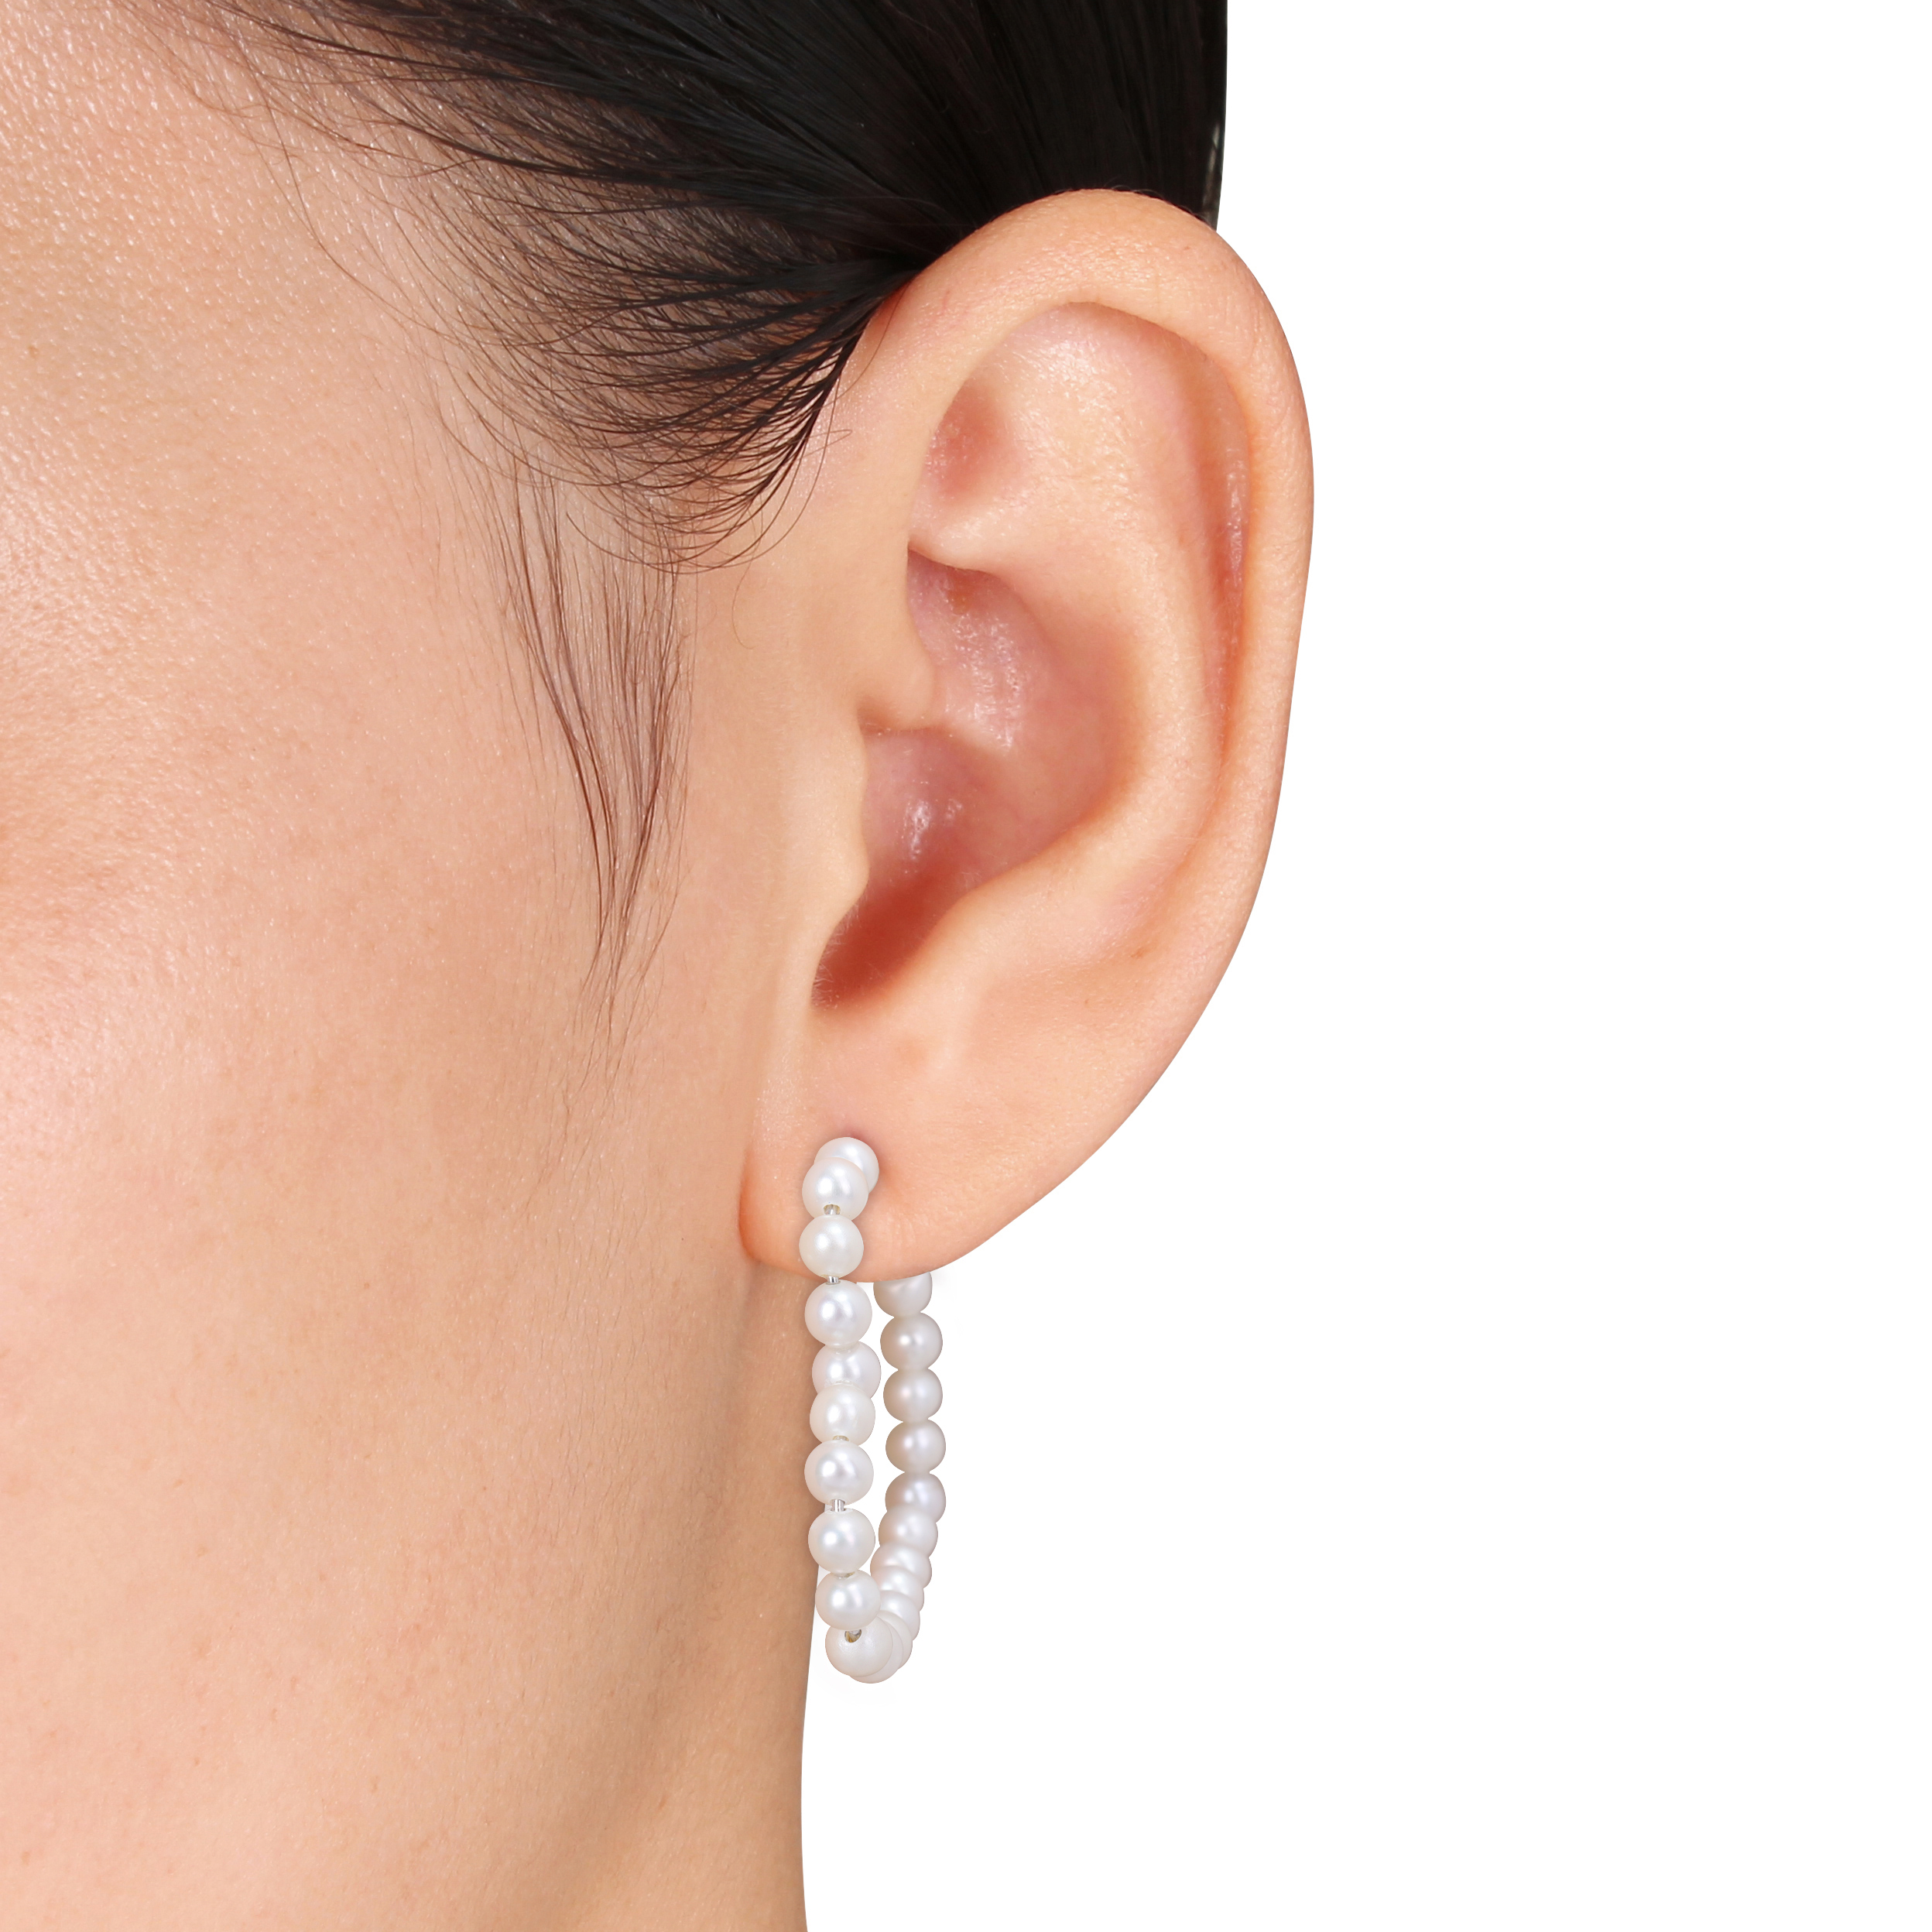 4.5 - 5 MM Cultured Freshwater Pearl Open Heart Hoop Earrings in Sterling Silver